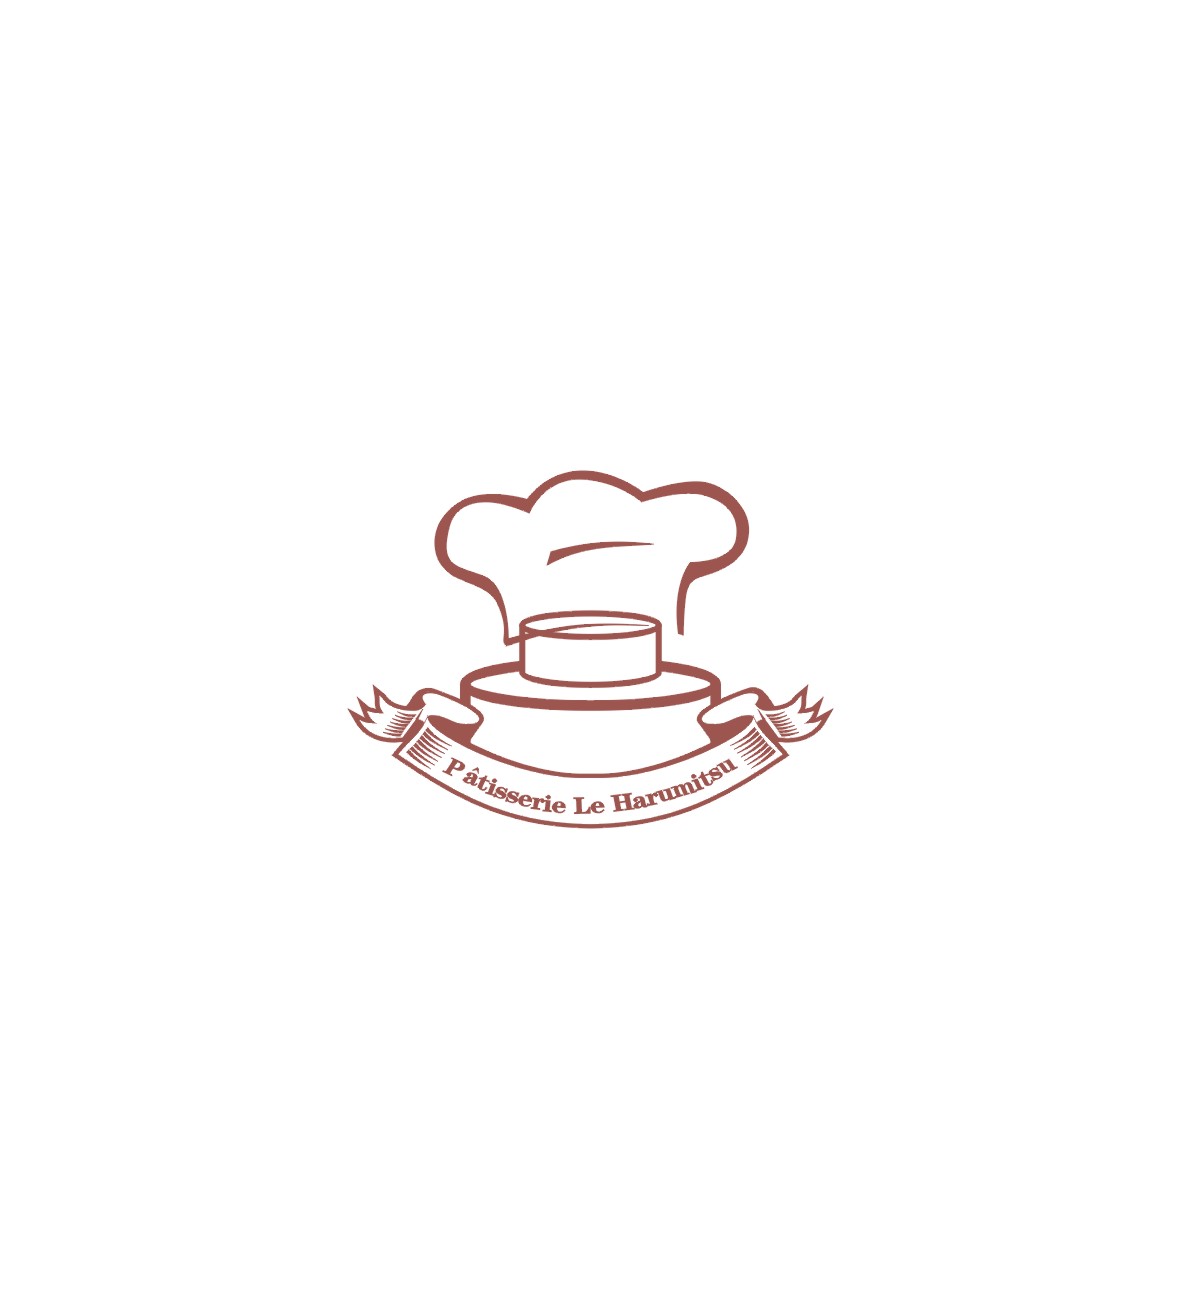 蛋糕店logo字体设计第26638026号稿件